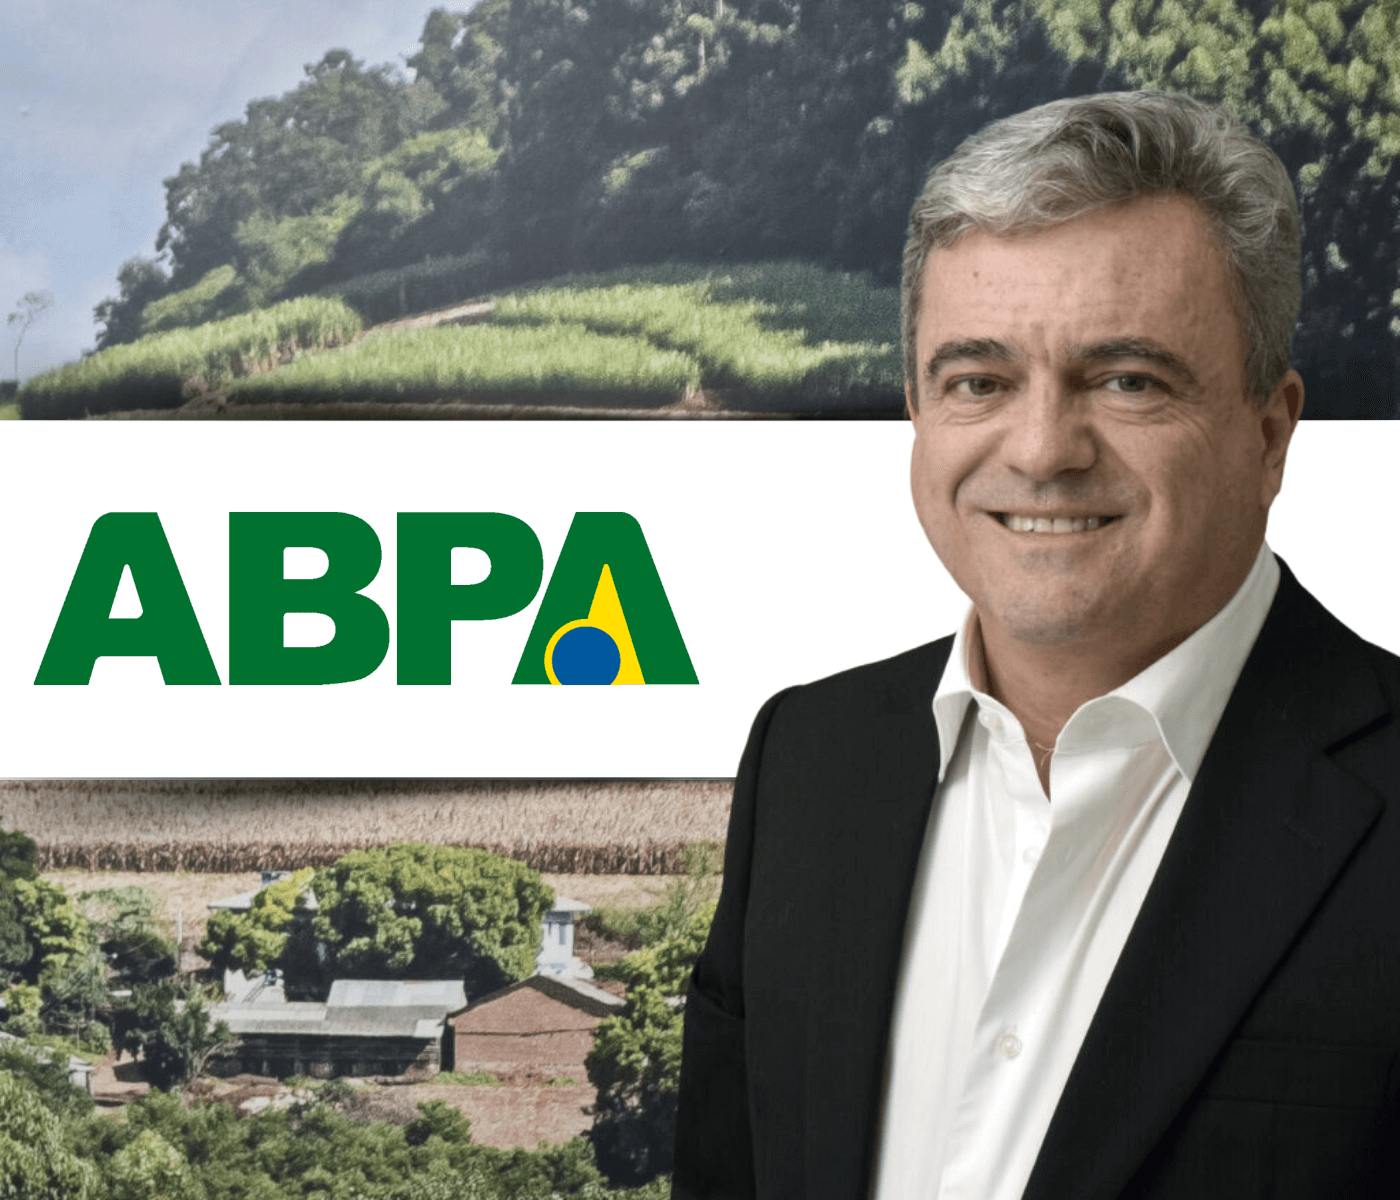  Mandato de Ricardo Santin é renovado na presidência da ABPA